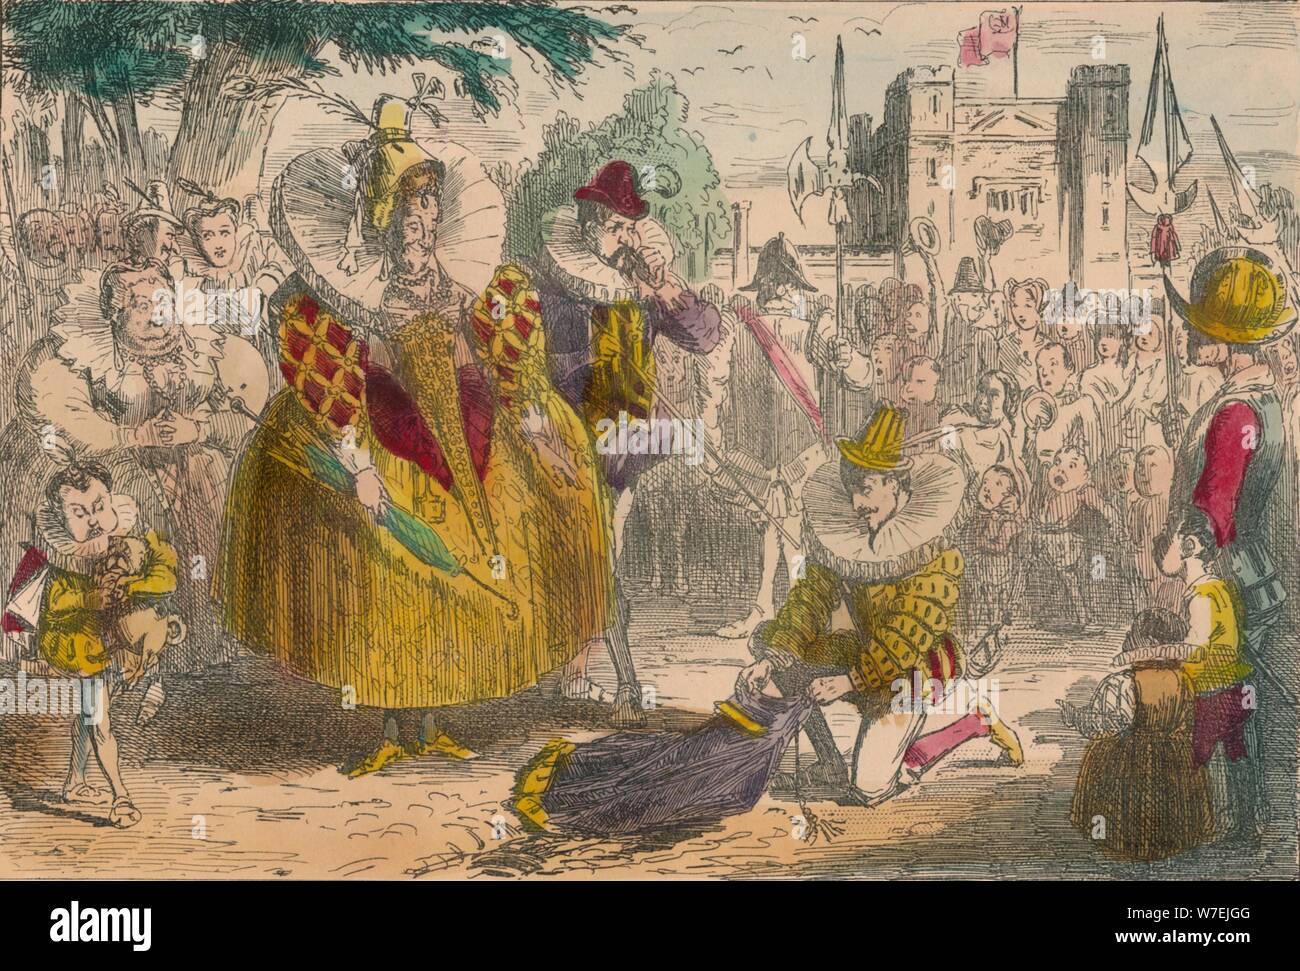 Queen Elizabeth and Sir Walter Raleigh, 1850. Artist: John Leech Stock Photo